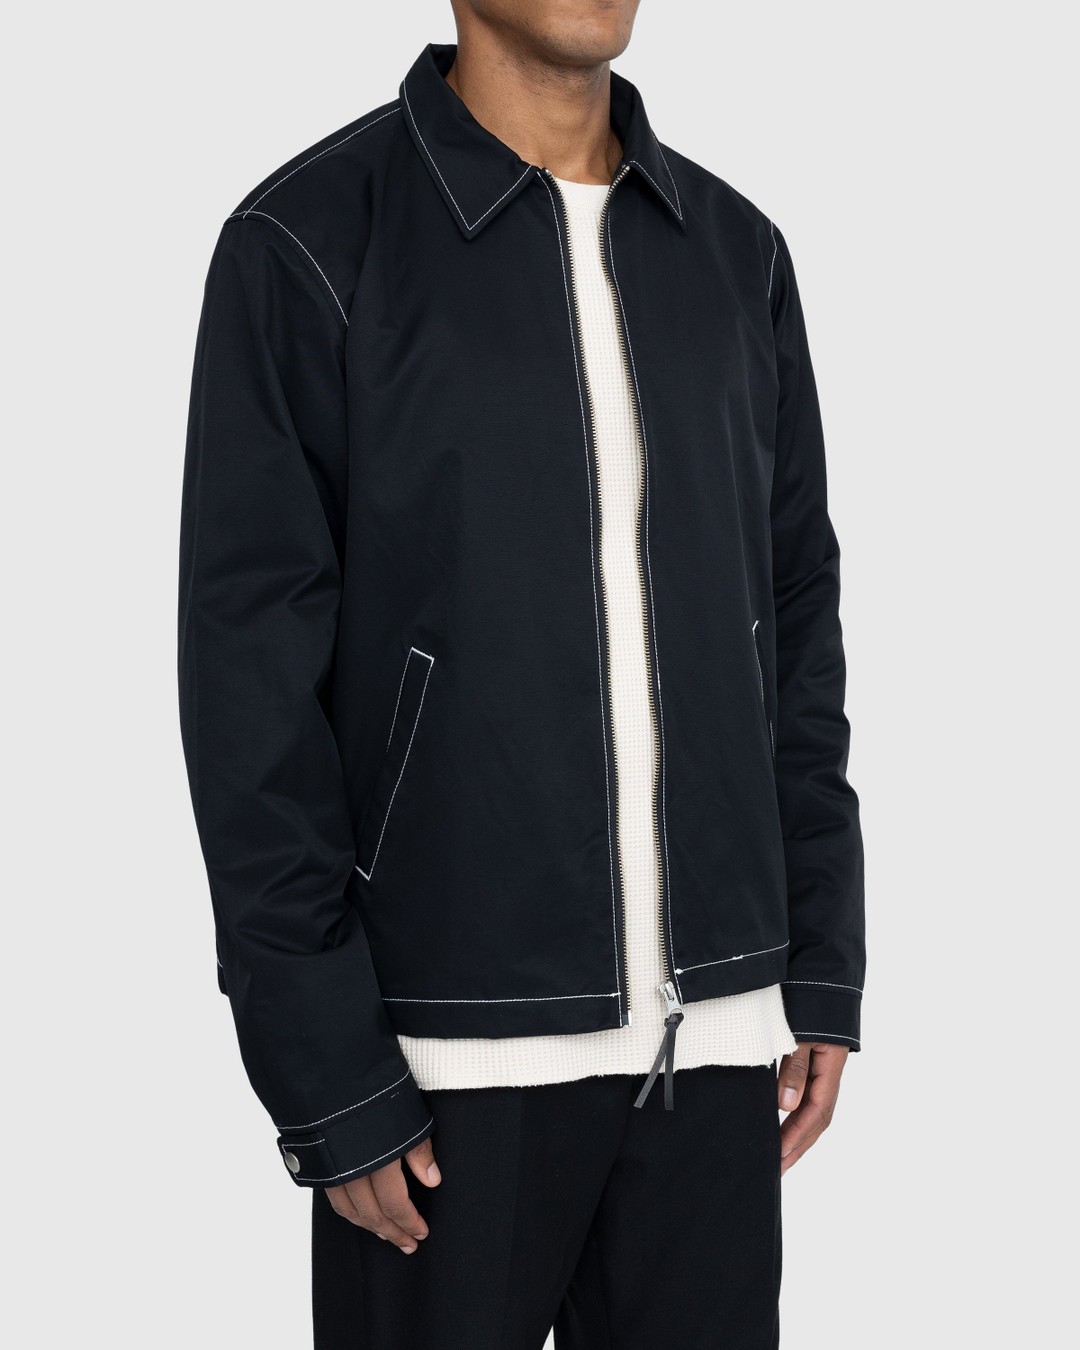 Highsnobiety – Brushed Nylon Jacket Black - Outerwear - Black - Image 3